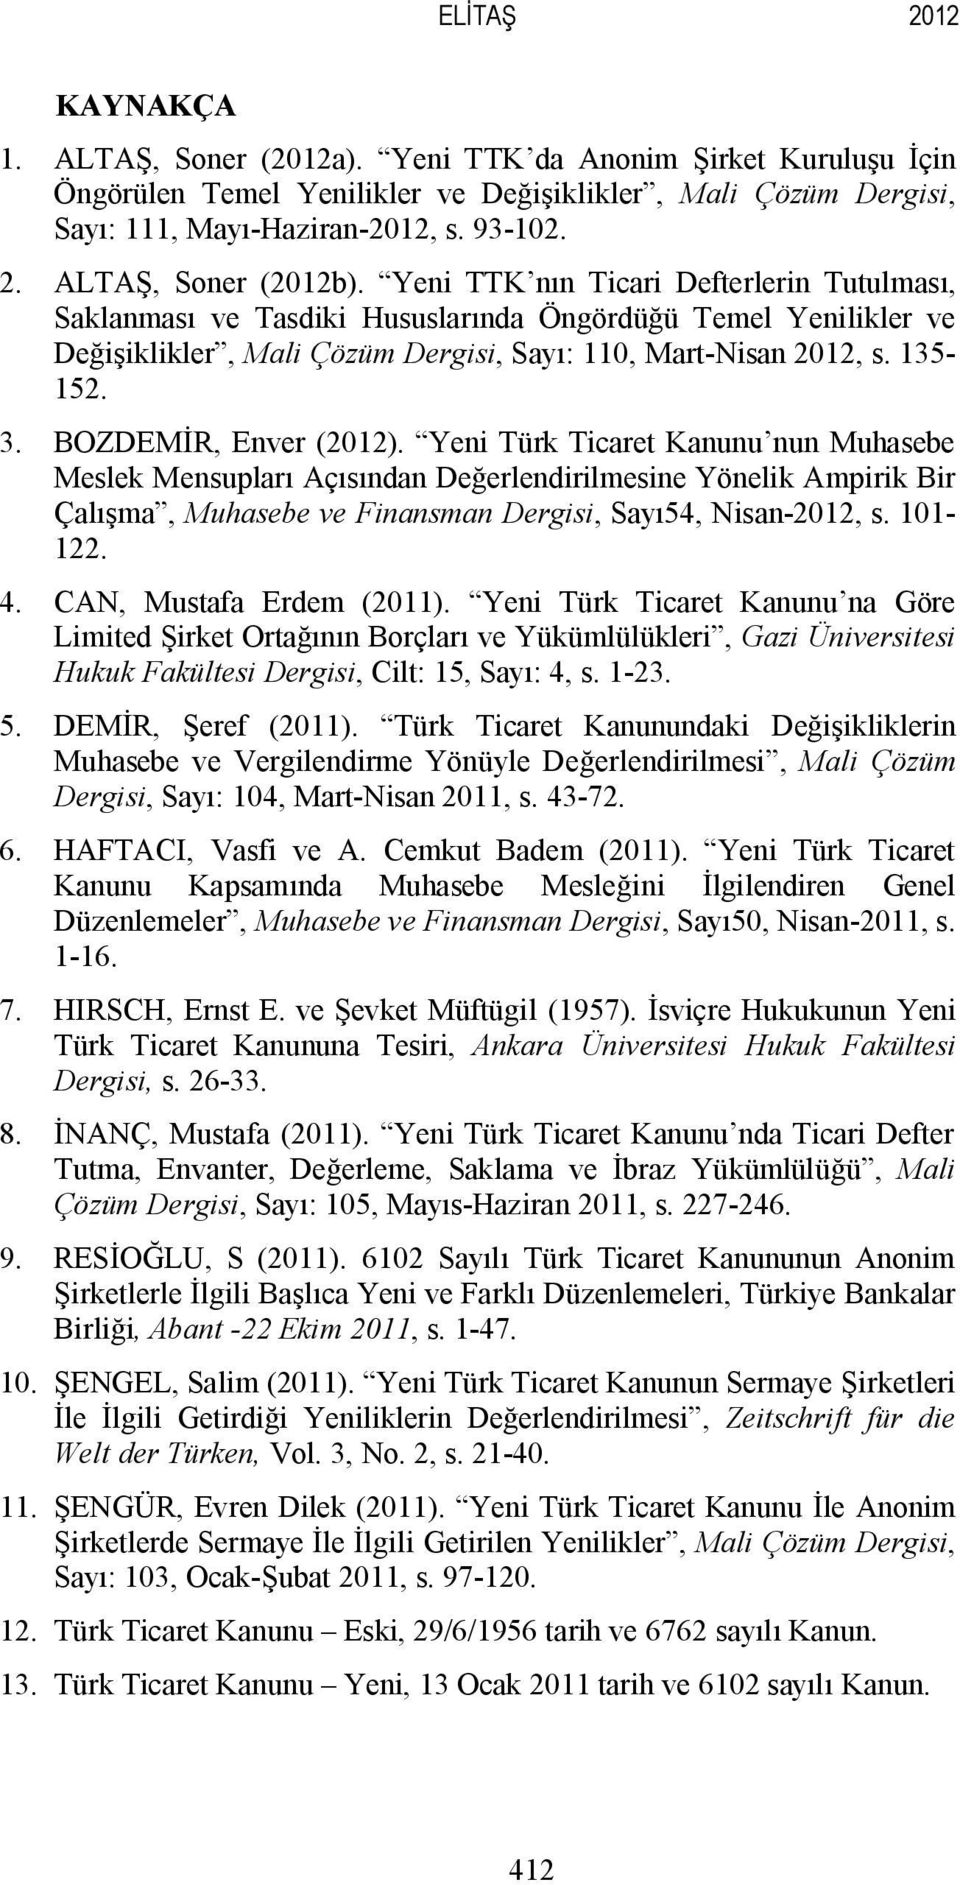 BOZDEMİR, Enver (2012). Yeni Türk Ticaret Kanunu nun Muhasebe Meslek Mensupları Açısından Değerlendirilmesine Yönelik Ampirik Bir Çalışma, Muhasebe ve Finansman Dergisi, Sayı54, Nisan-2012, s.